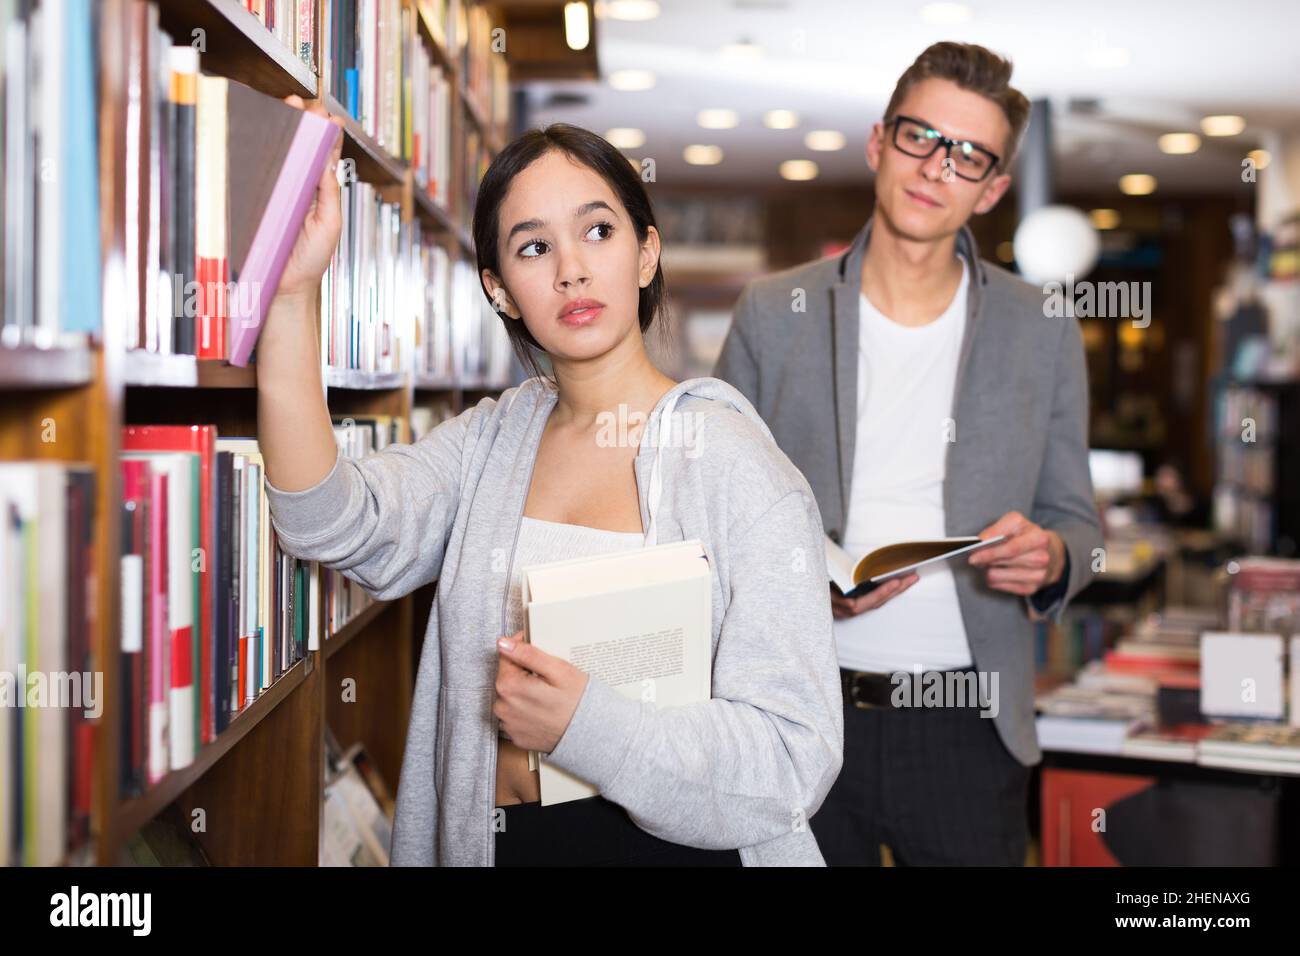 las mujeres que escogían los libros atrajeron la atención del individuo Foto de stock